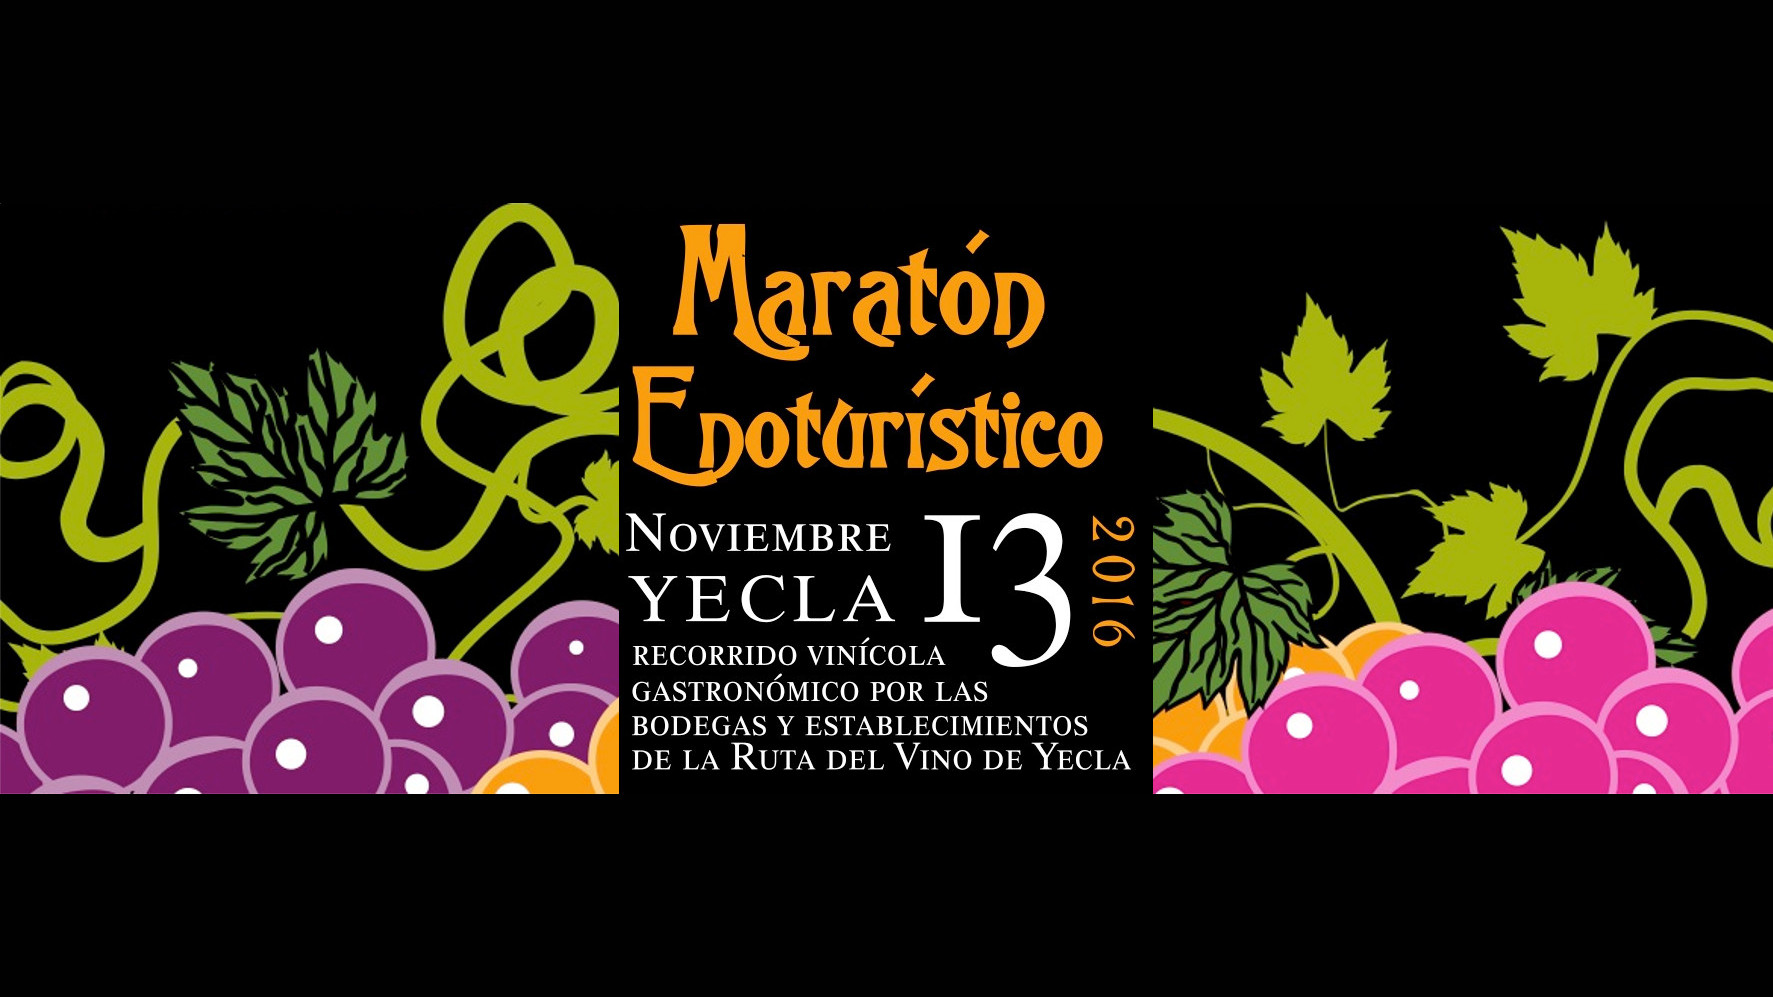 13 Nov 2016. Maratón enoturista en Yecla